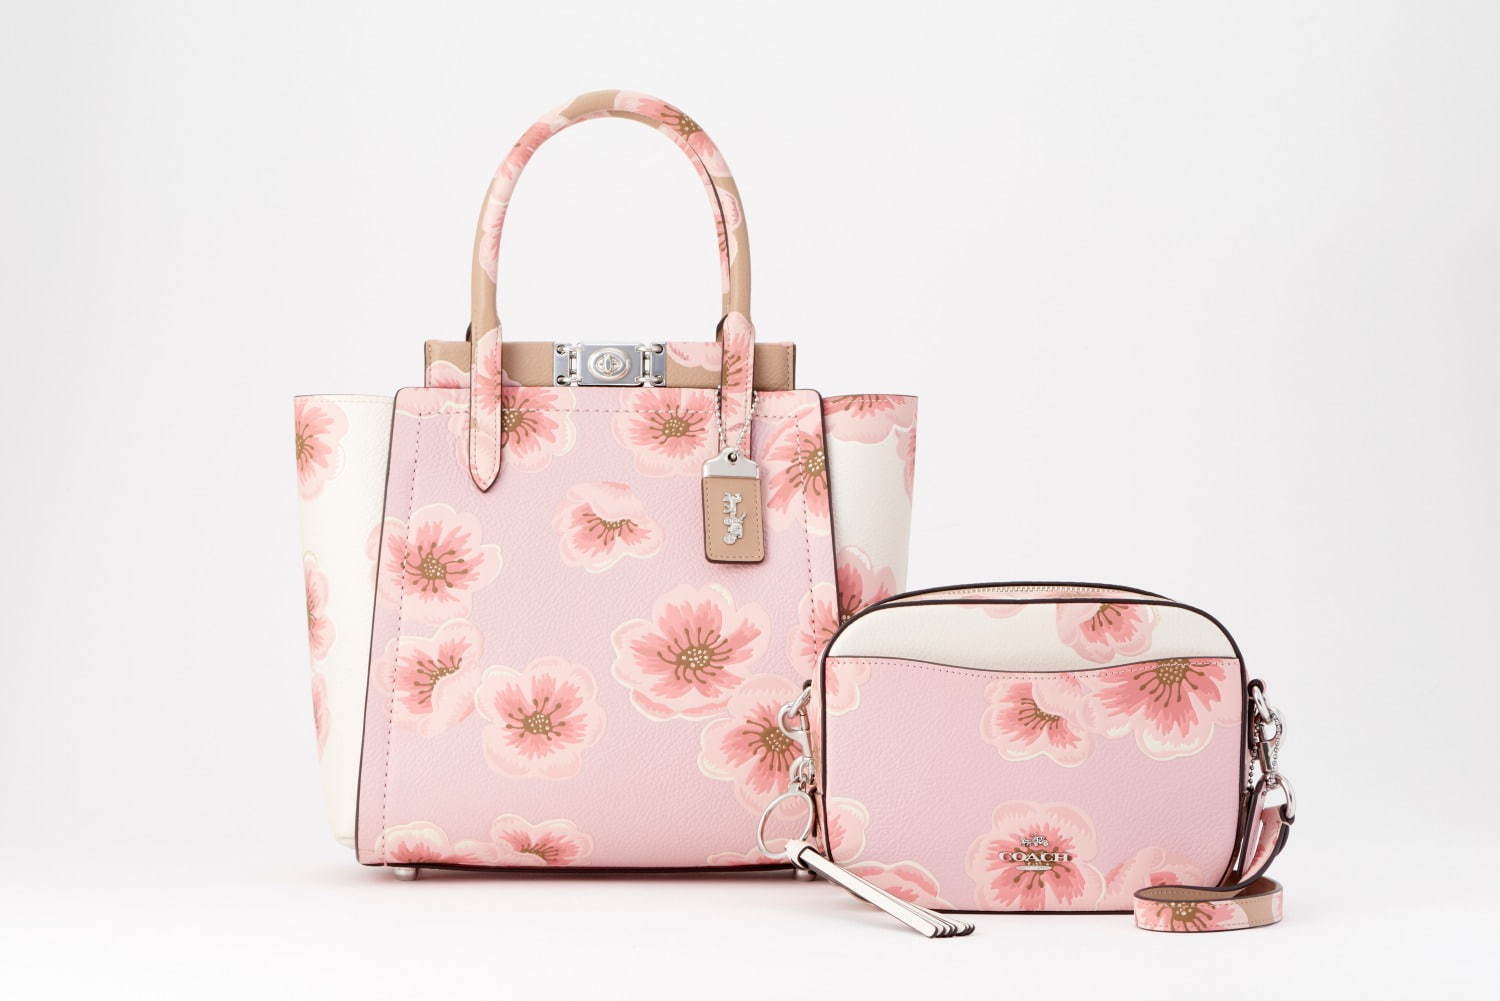 コーチの サクラ バッグ 財布 ピンクグラデ カラーの桜プリントが日本限定で ファッションプレス